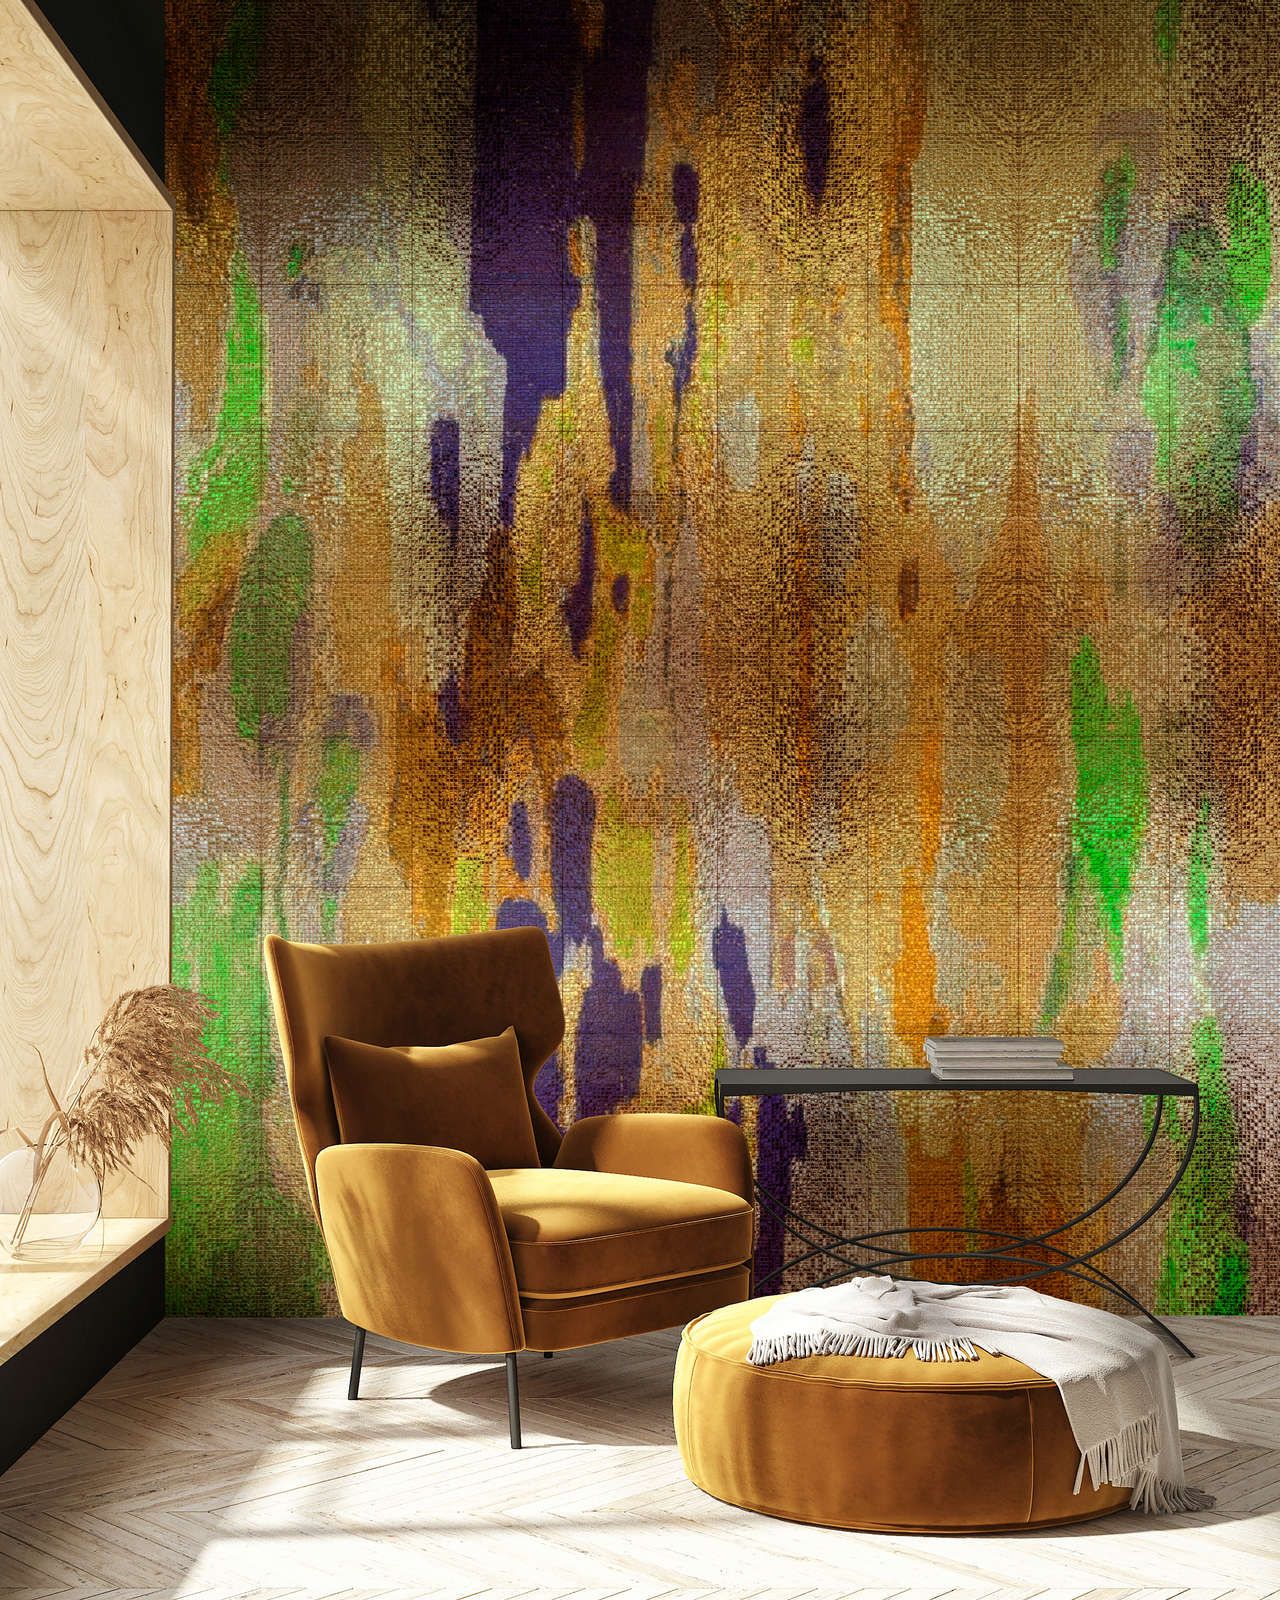             Fotomural »marielle 1«< - degradados de color violeta, dorado, verde con estructura de mosaico - tejido no tejido mate, liso
        